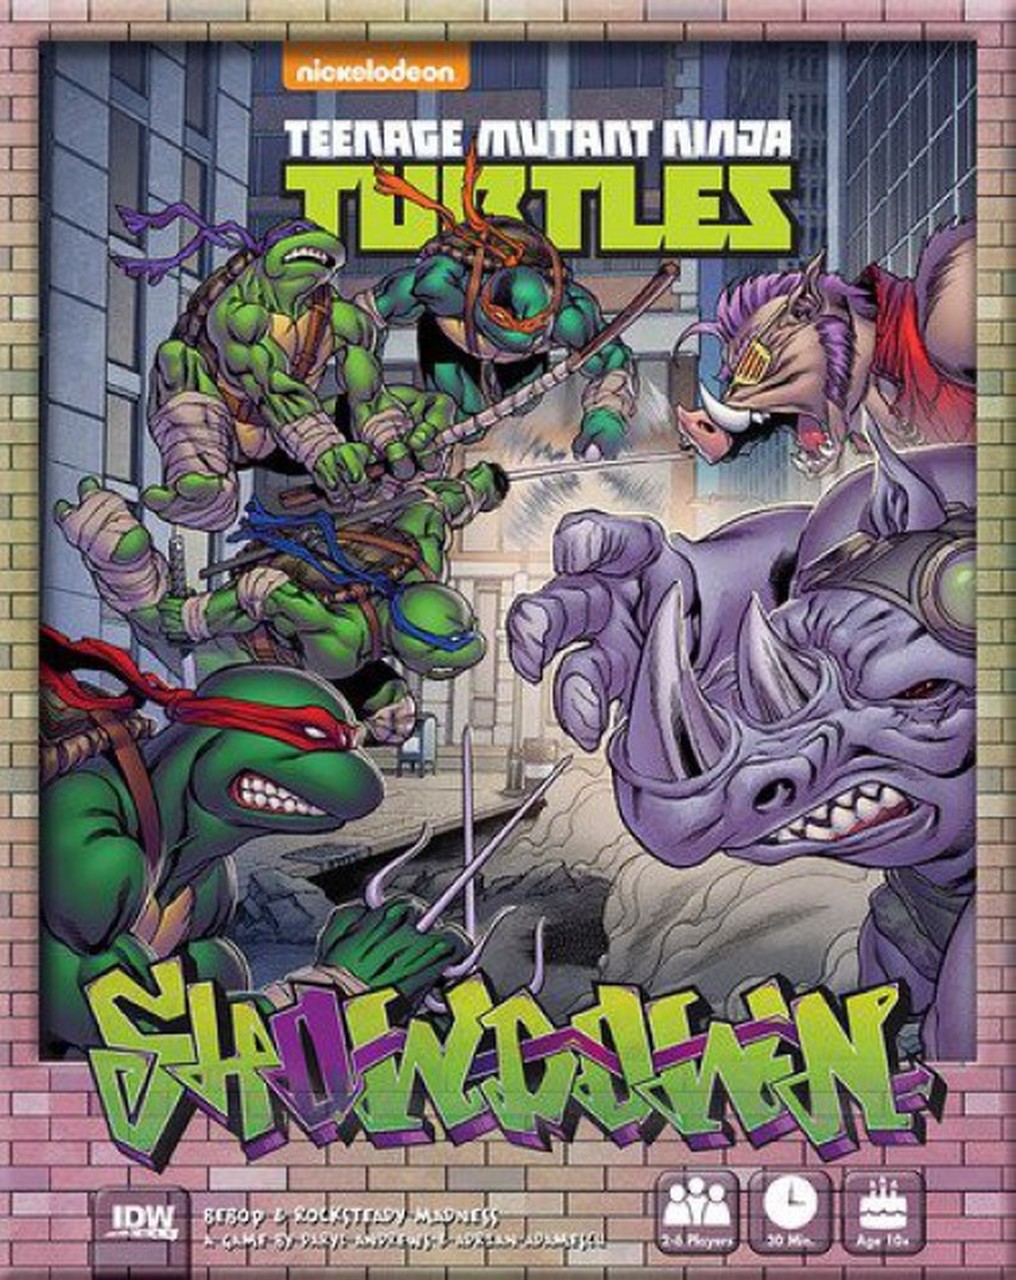 Teenage Mutant Ninja Turtles Showdown Bebop & Rocksteady Board Game